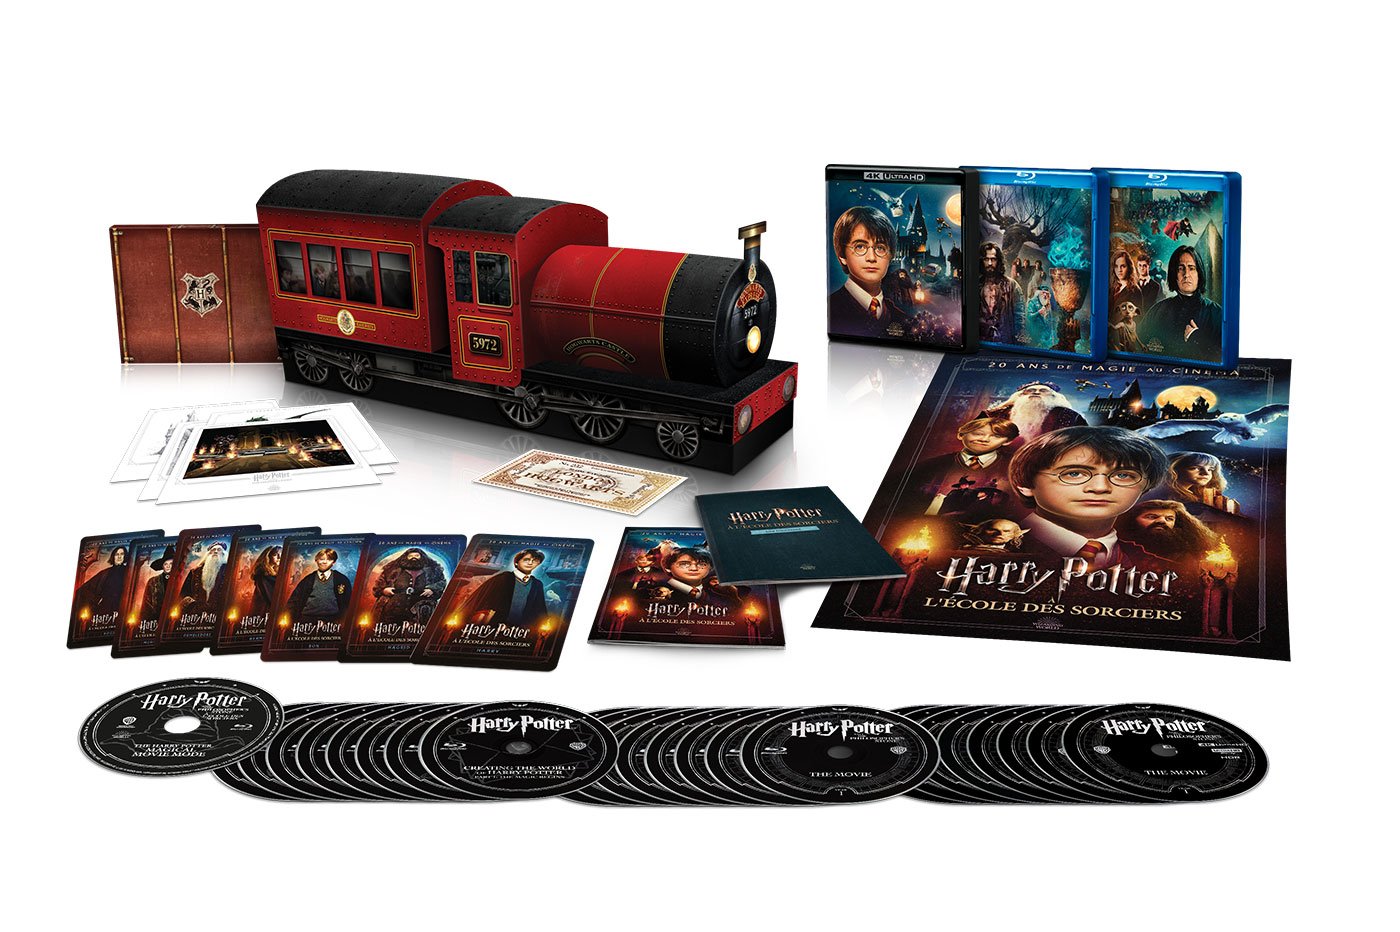 Harry Potter - L'intégrale des 8 films en coffret 4K : -40 % de réduction  pour le Black Friday